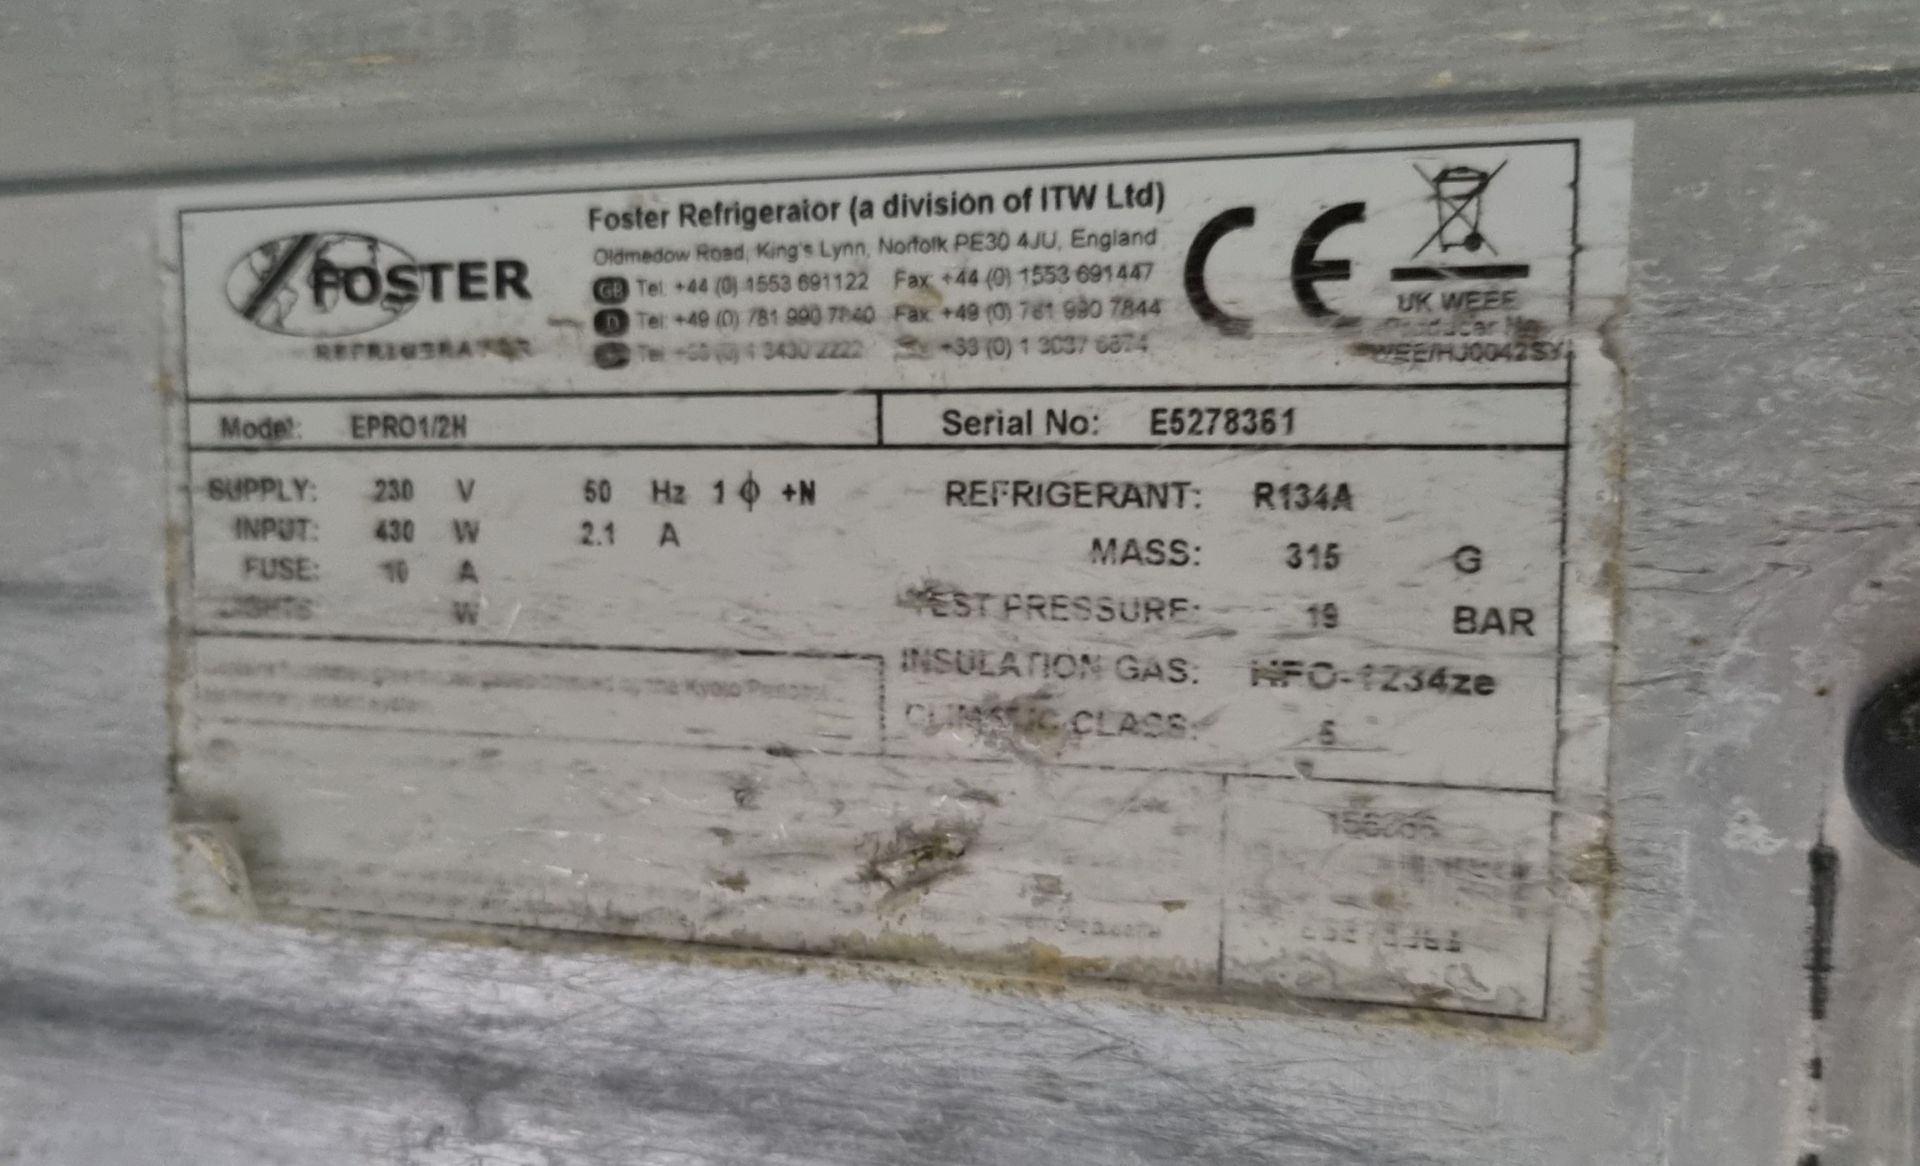 Foster EPRO 1/2H stainless steel double door counter fridge - W 1415 x D 705 x H 995mm - Bild 4 aus 5